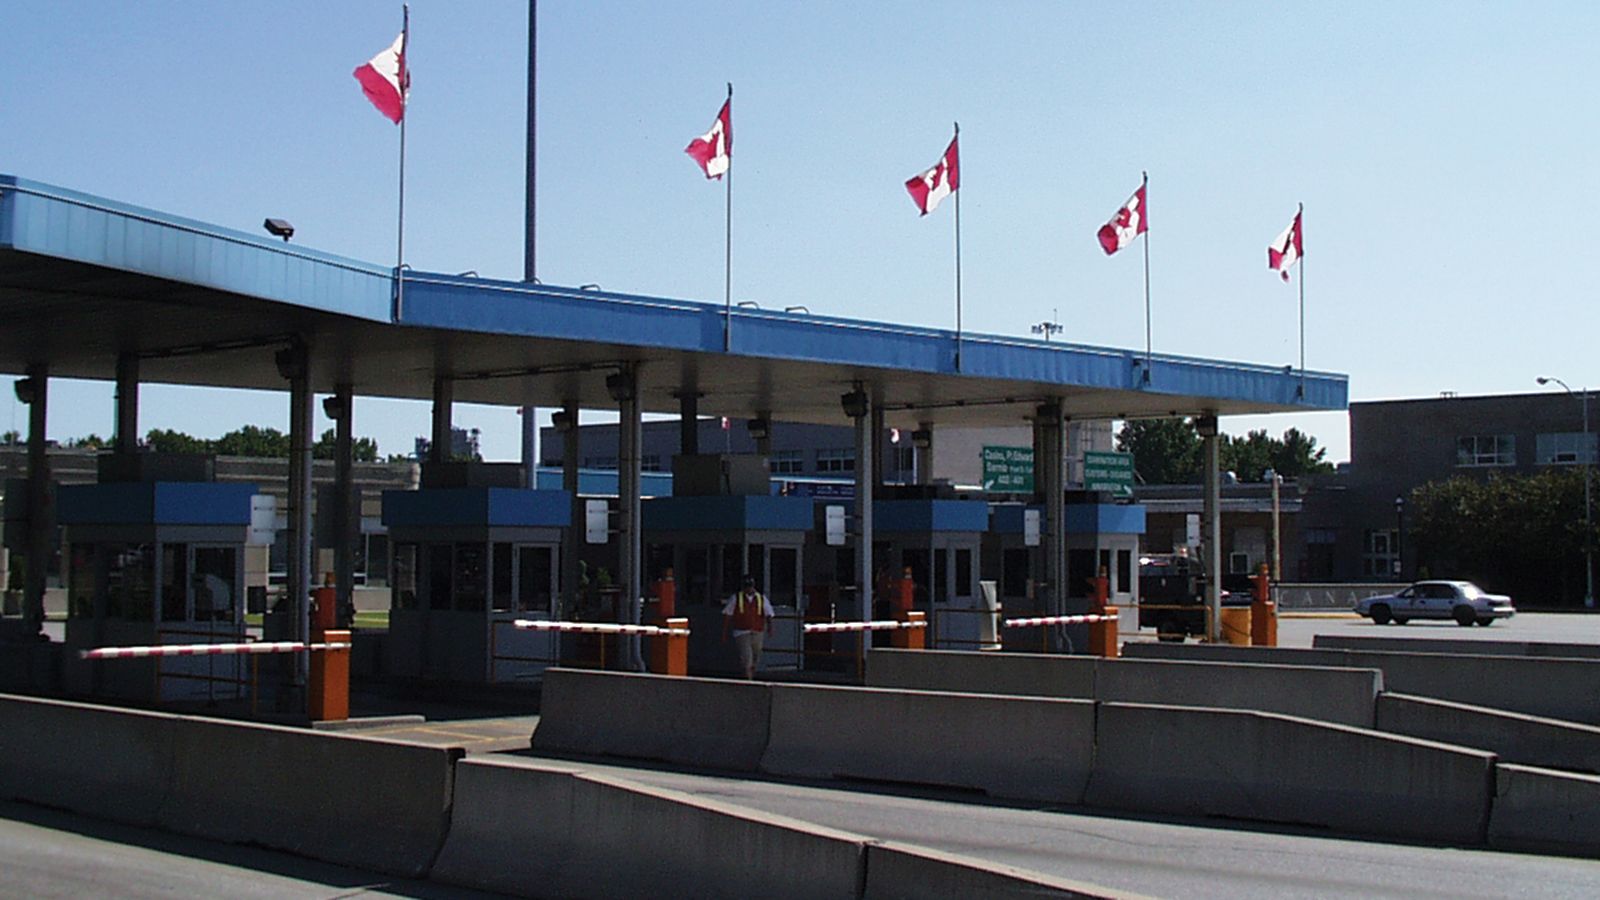 Canadian border service agency (CBSA)